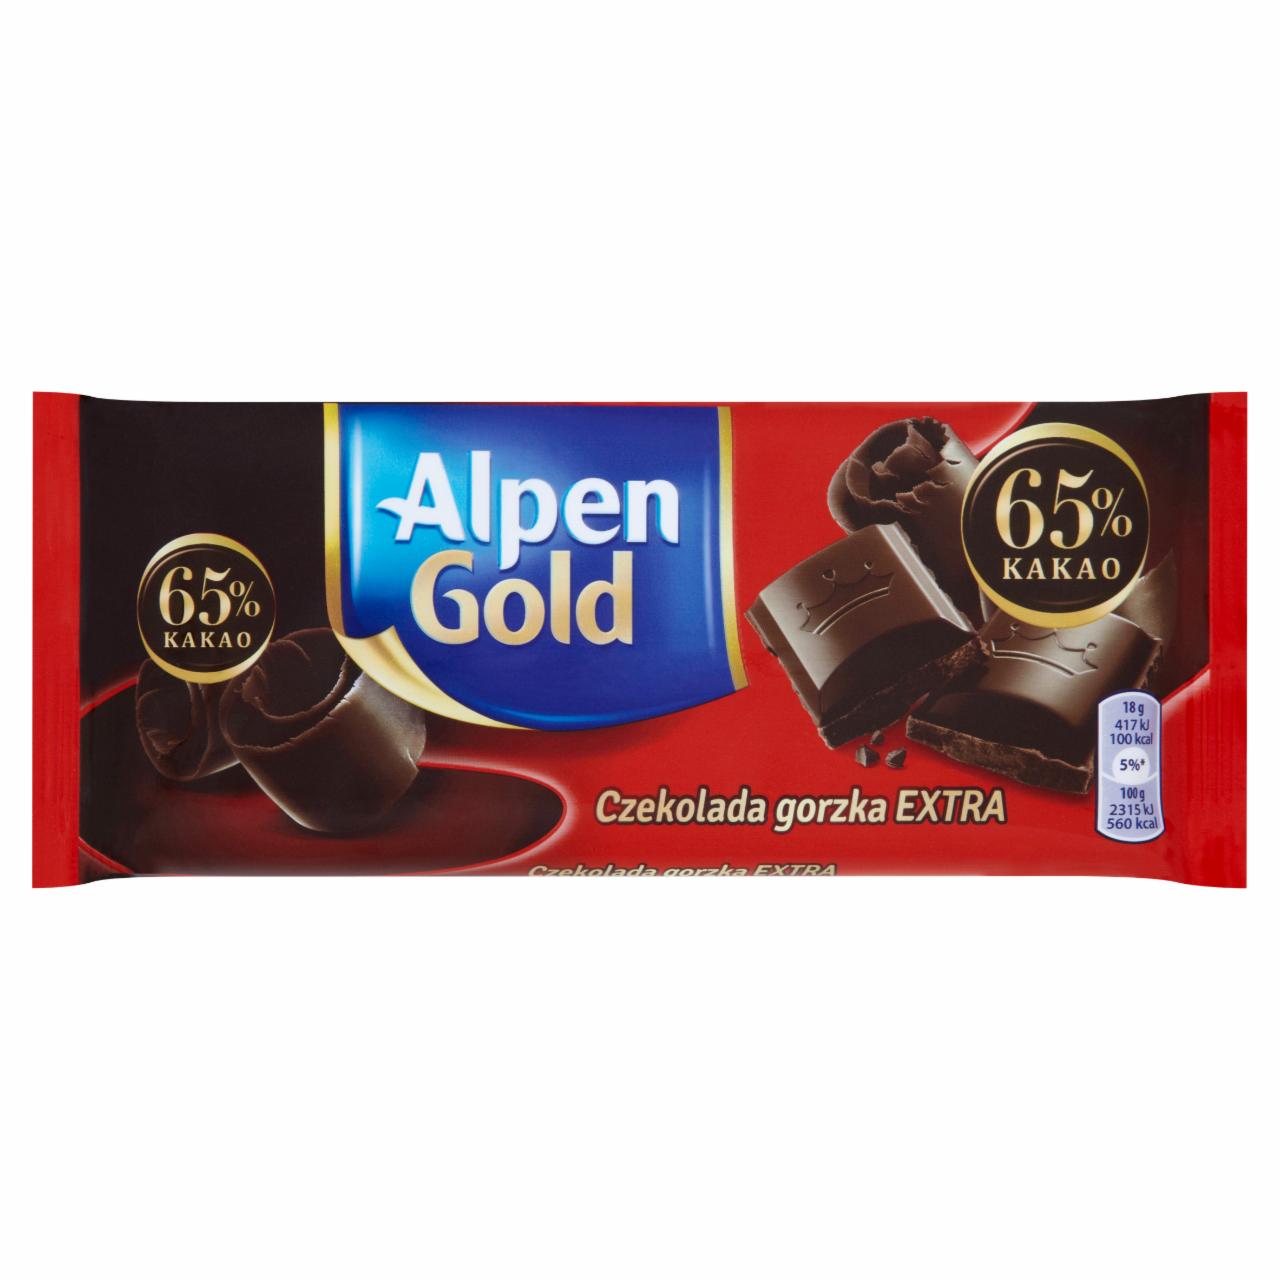 Zdjęcia - Alpen Gold Czekolada gorzka extra 90 g